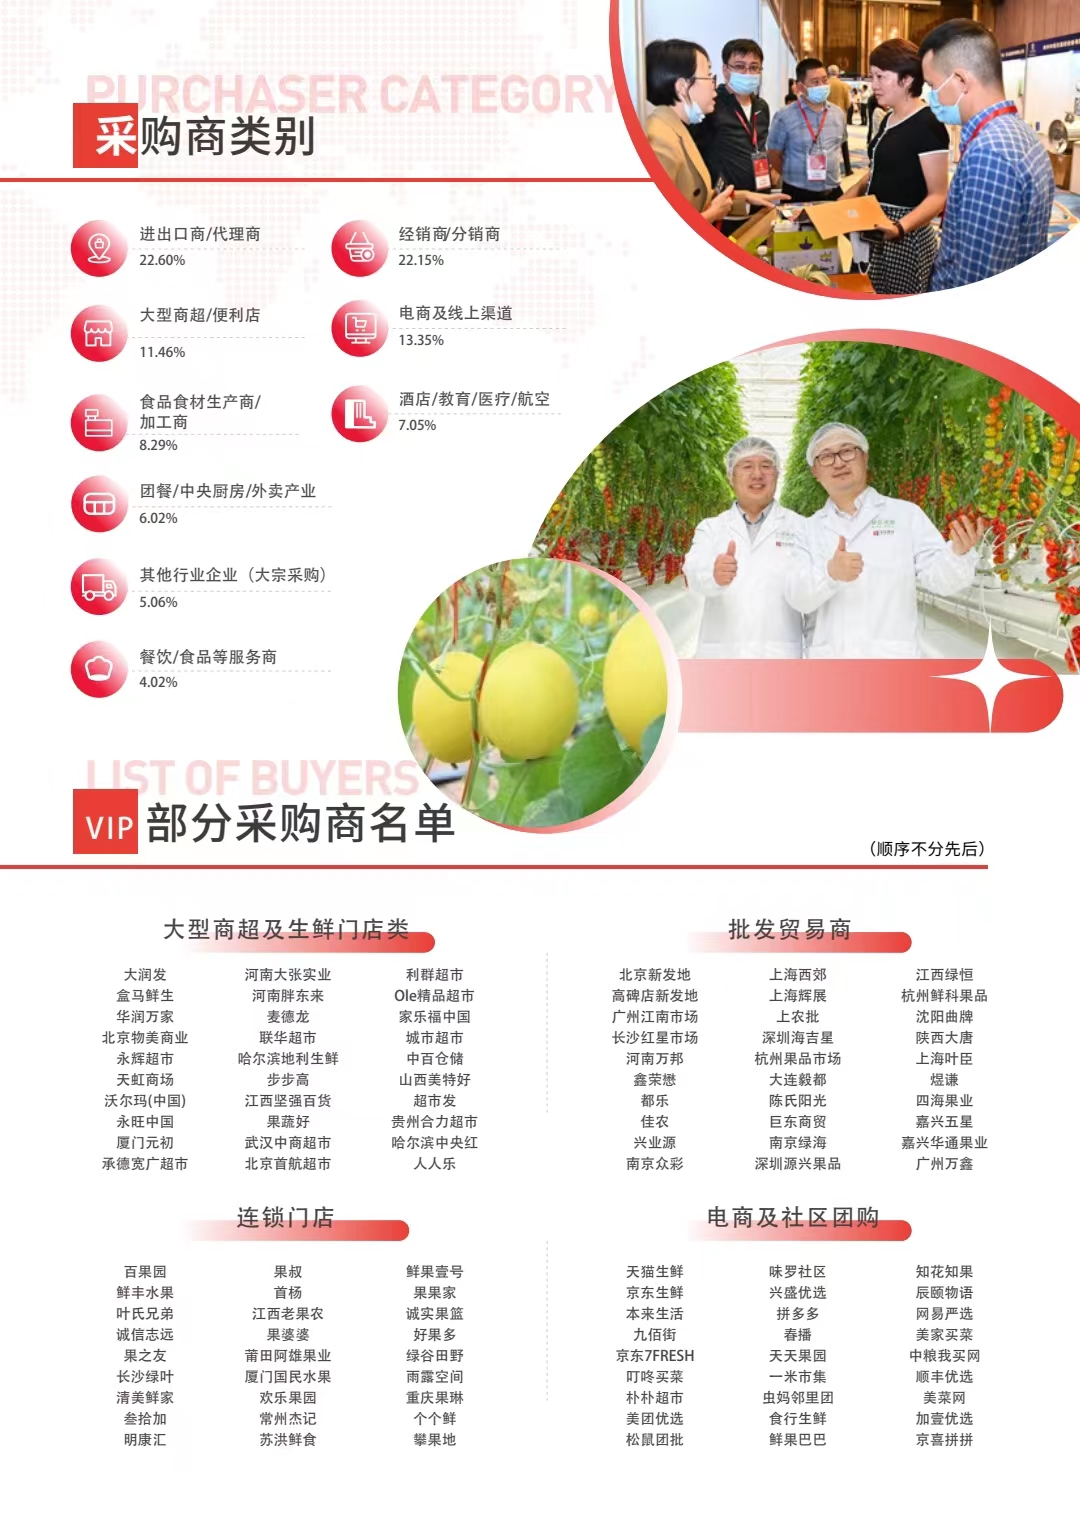 2023 首届中国设施果蔬产业大会 ( 广州 )